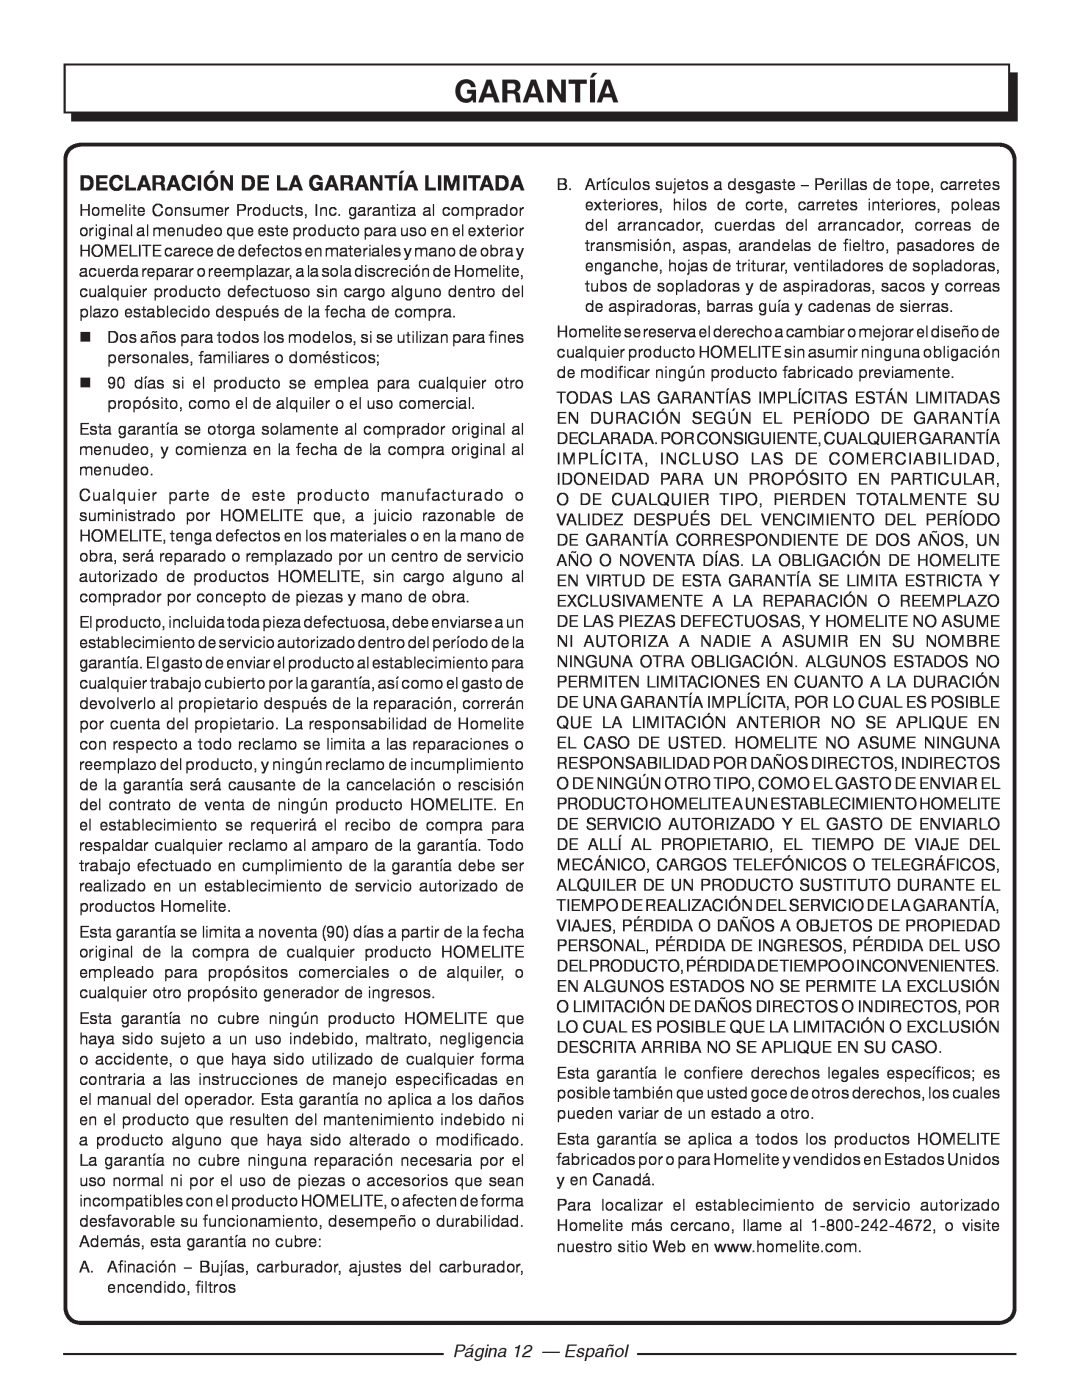 Homelite 26SS UT22650, 26CS UT22600 manuel dutilisation Declaración De La Garantía Limitada, Página 12 - Español 